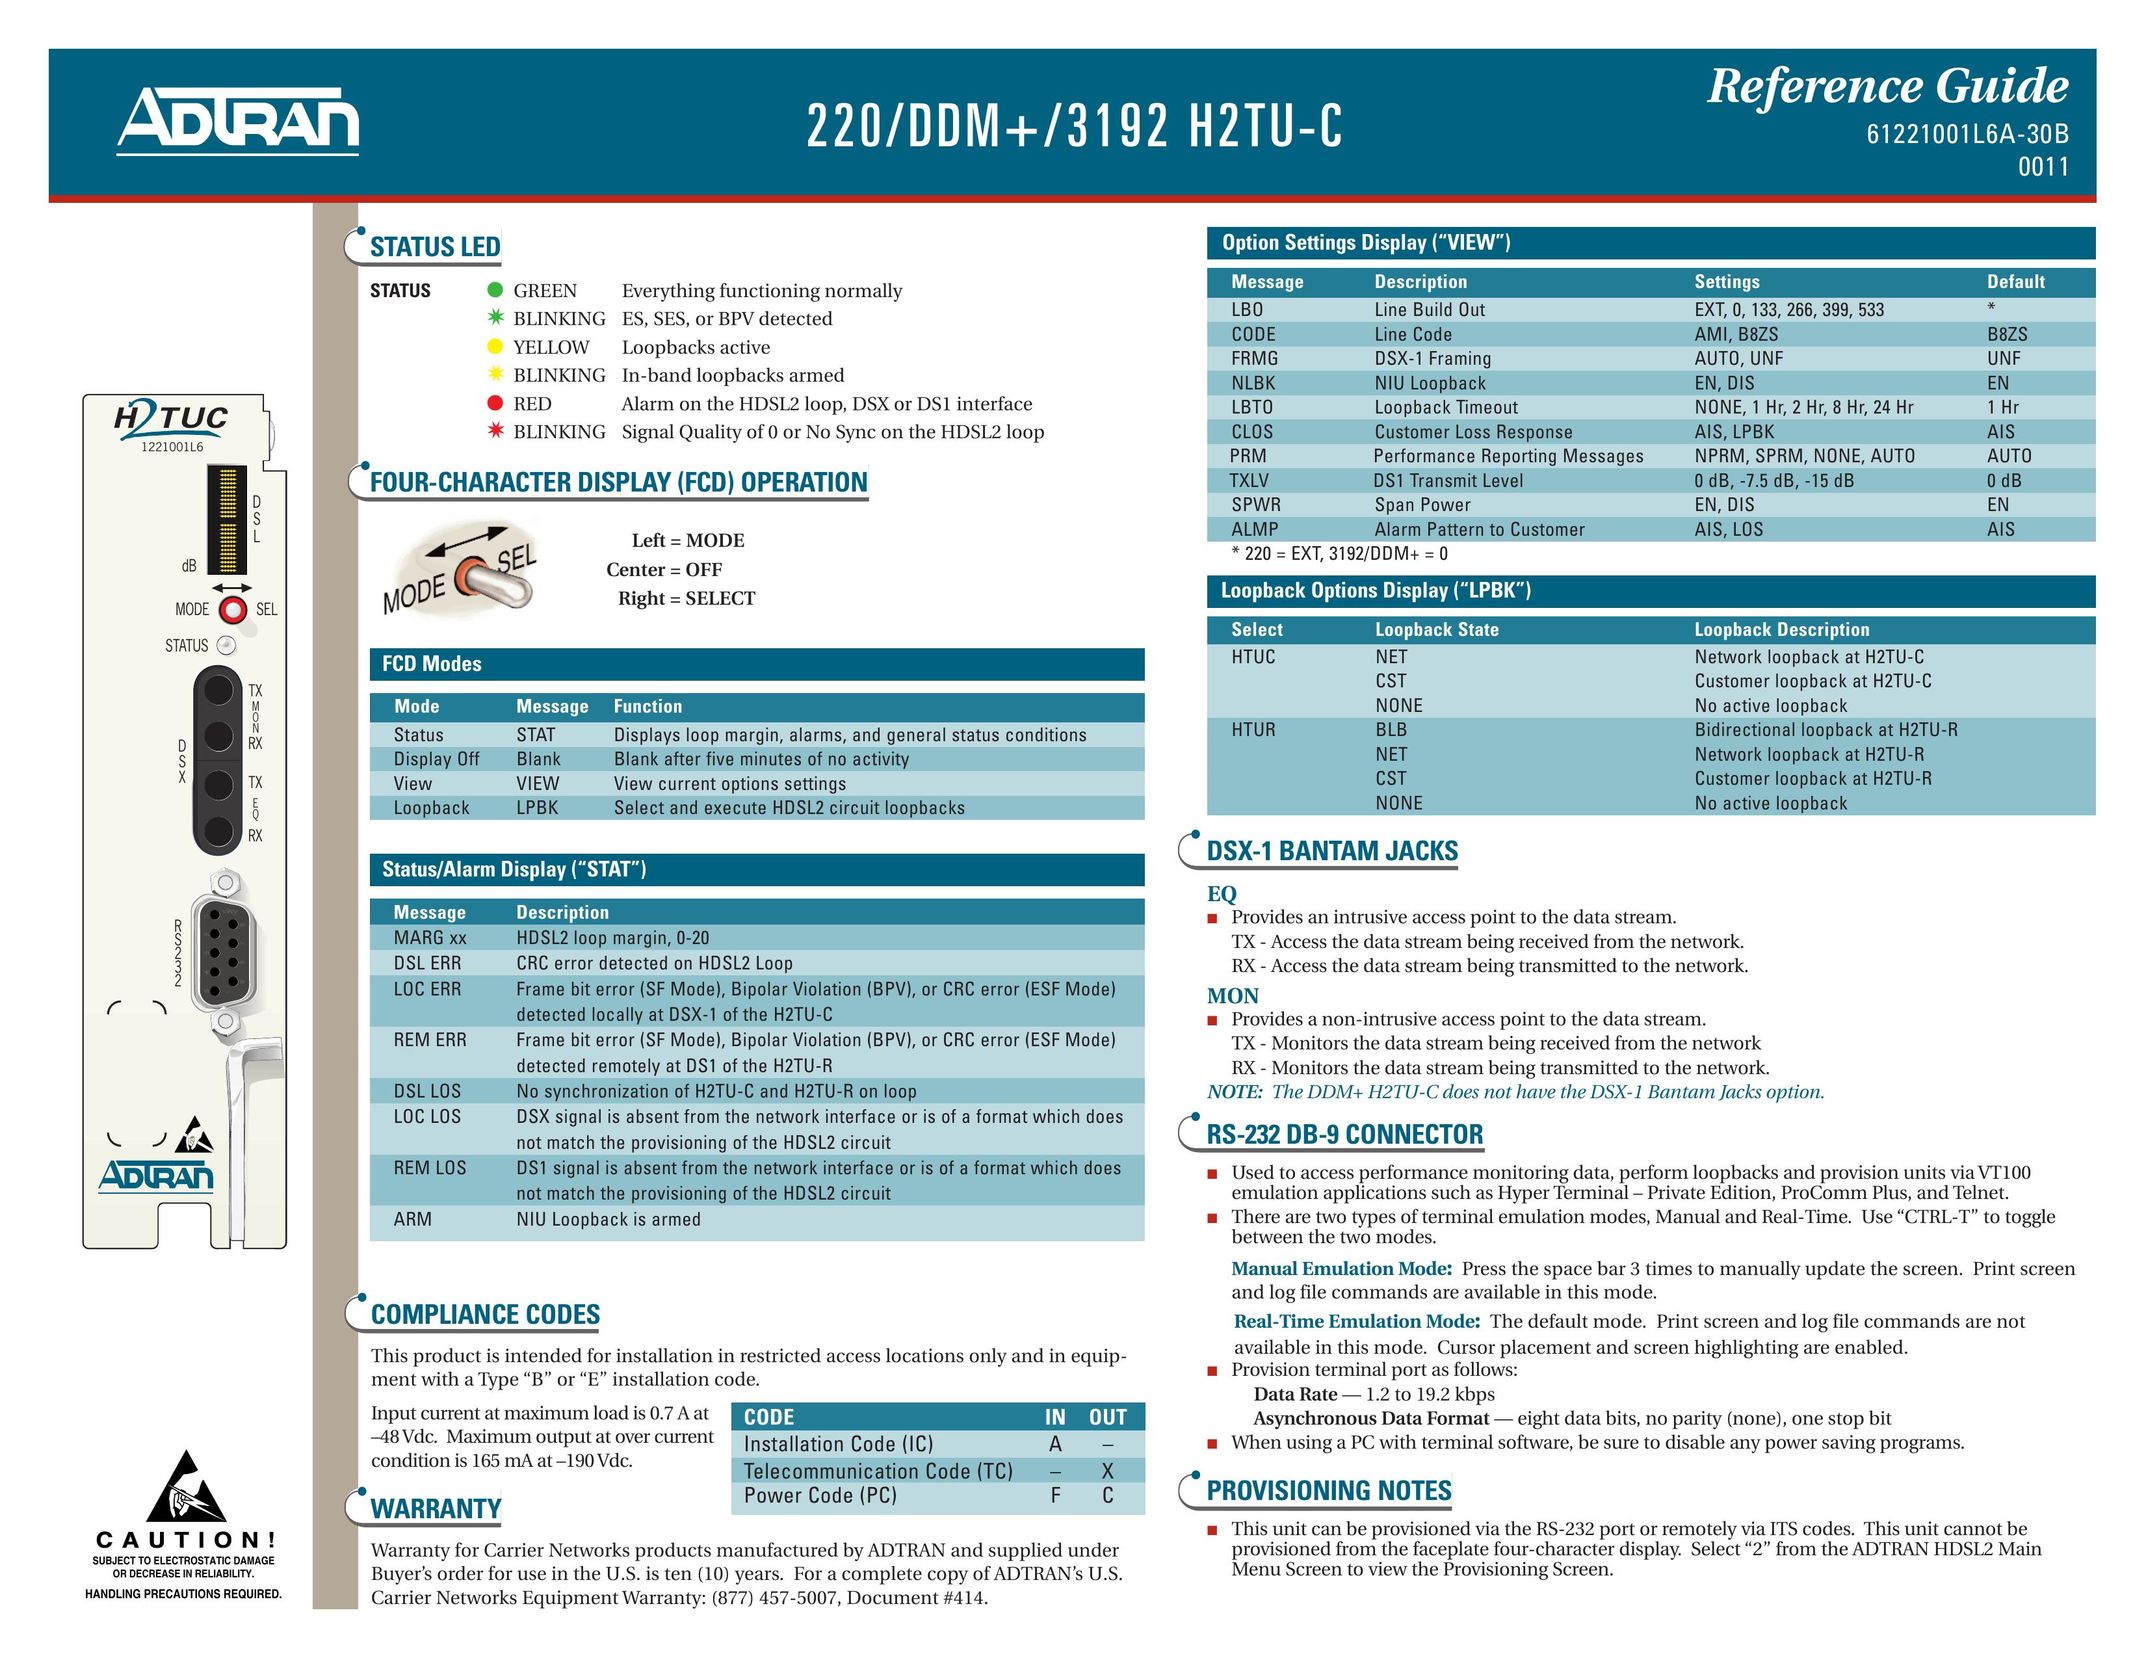 ADTRAN 220 DDM, 3192 H2TU-C Network Card User Manual